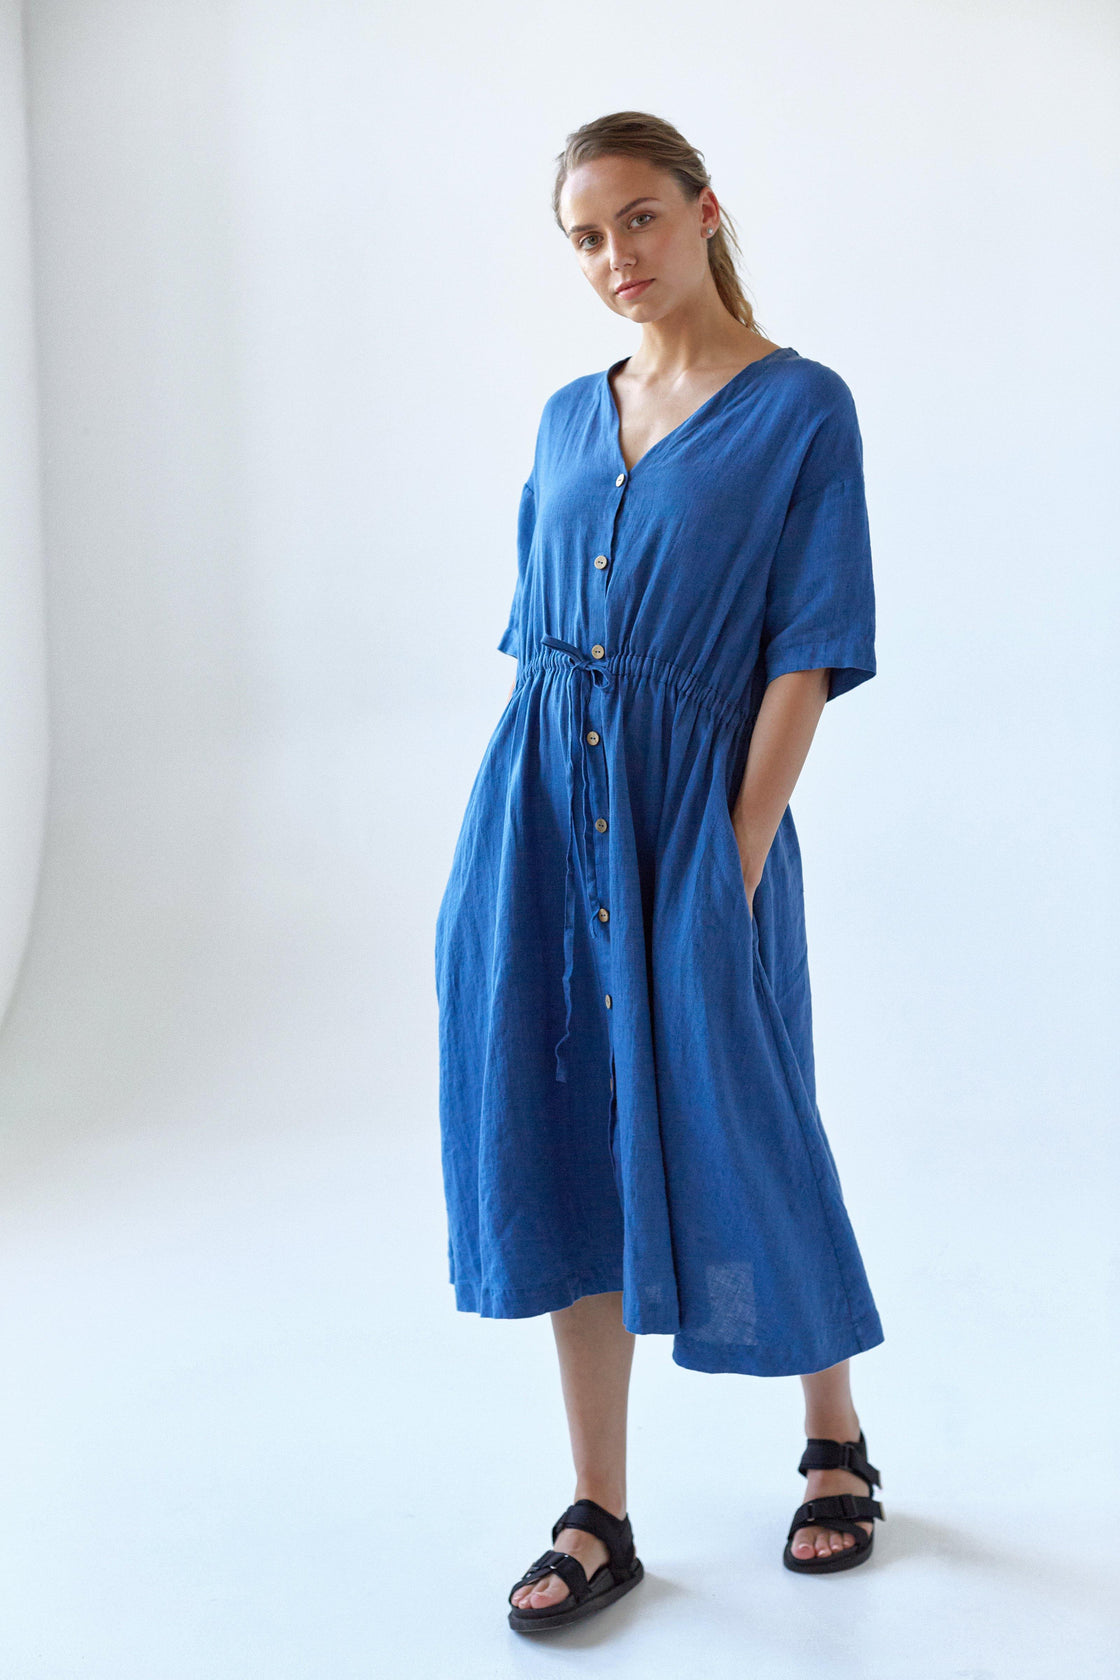 Short sleeve blue linen dress - Manufacture de Lin